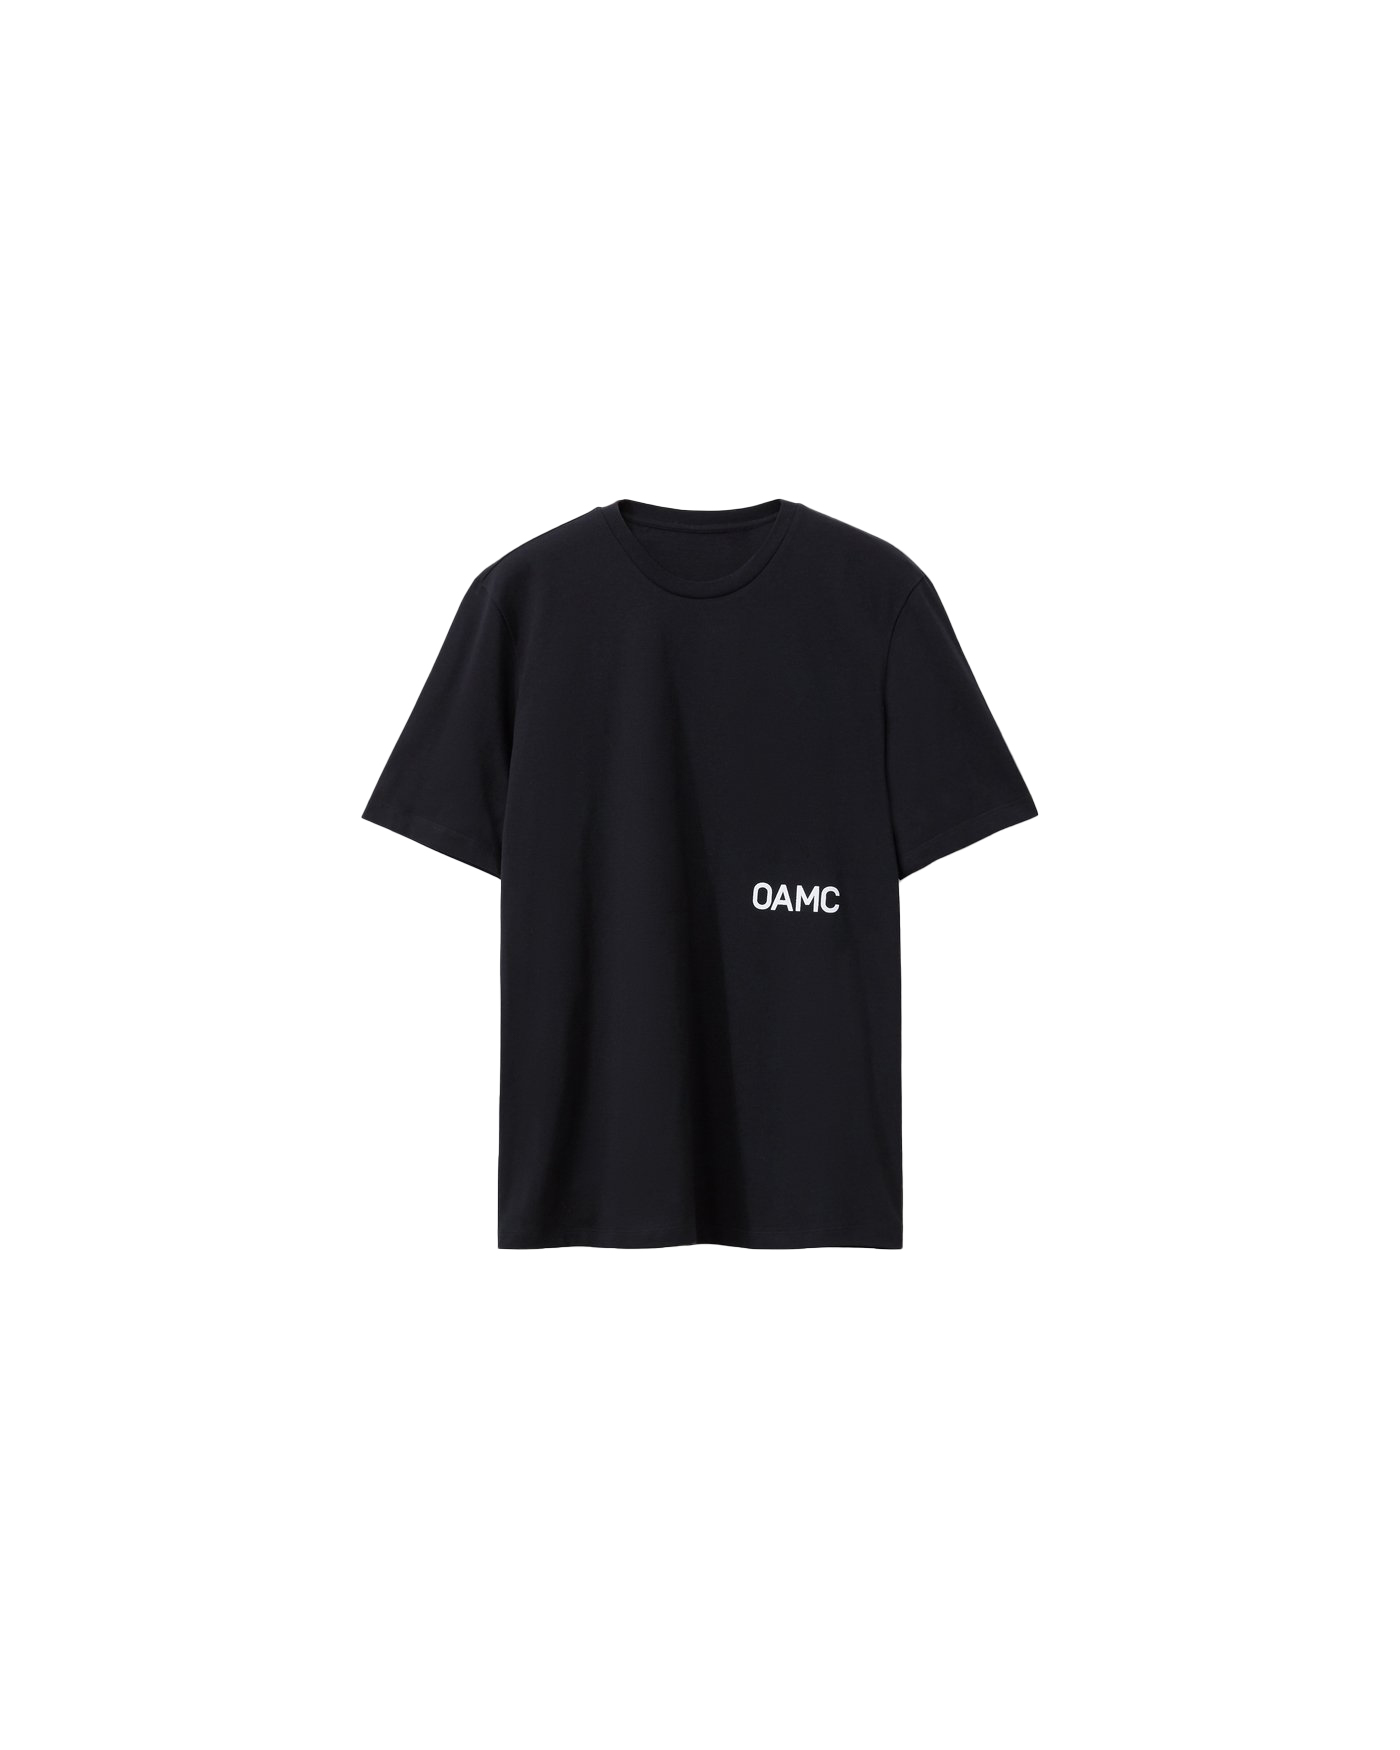 OAMC x Fragment T-shirt Black